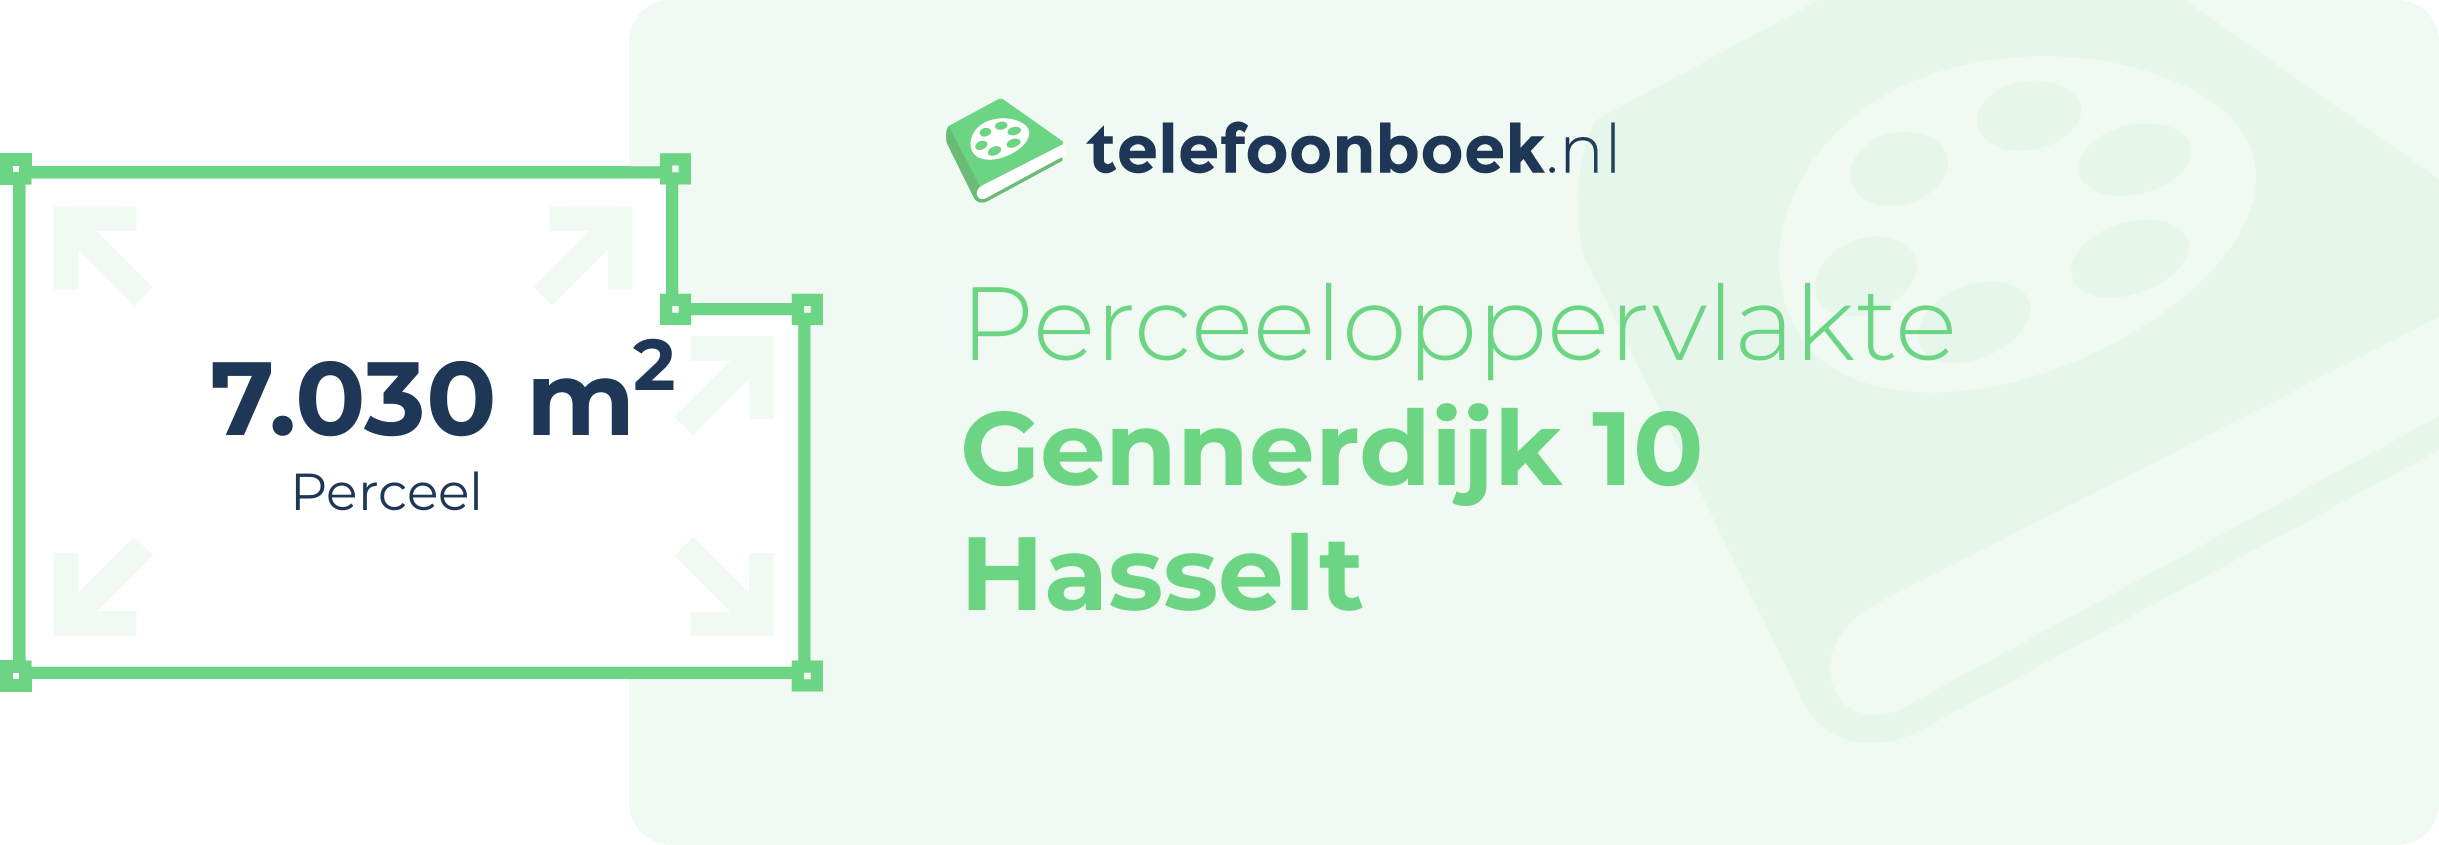 Perceeloppervlakte Gennerdijk 10 Hasselt